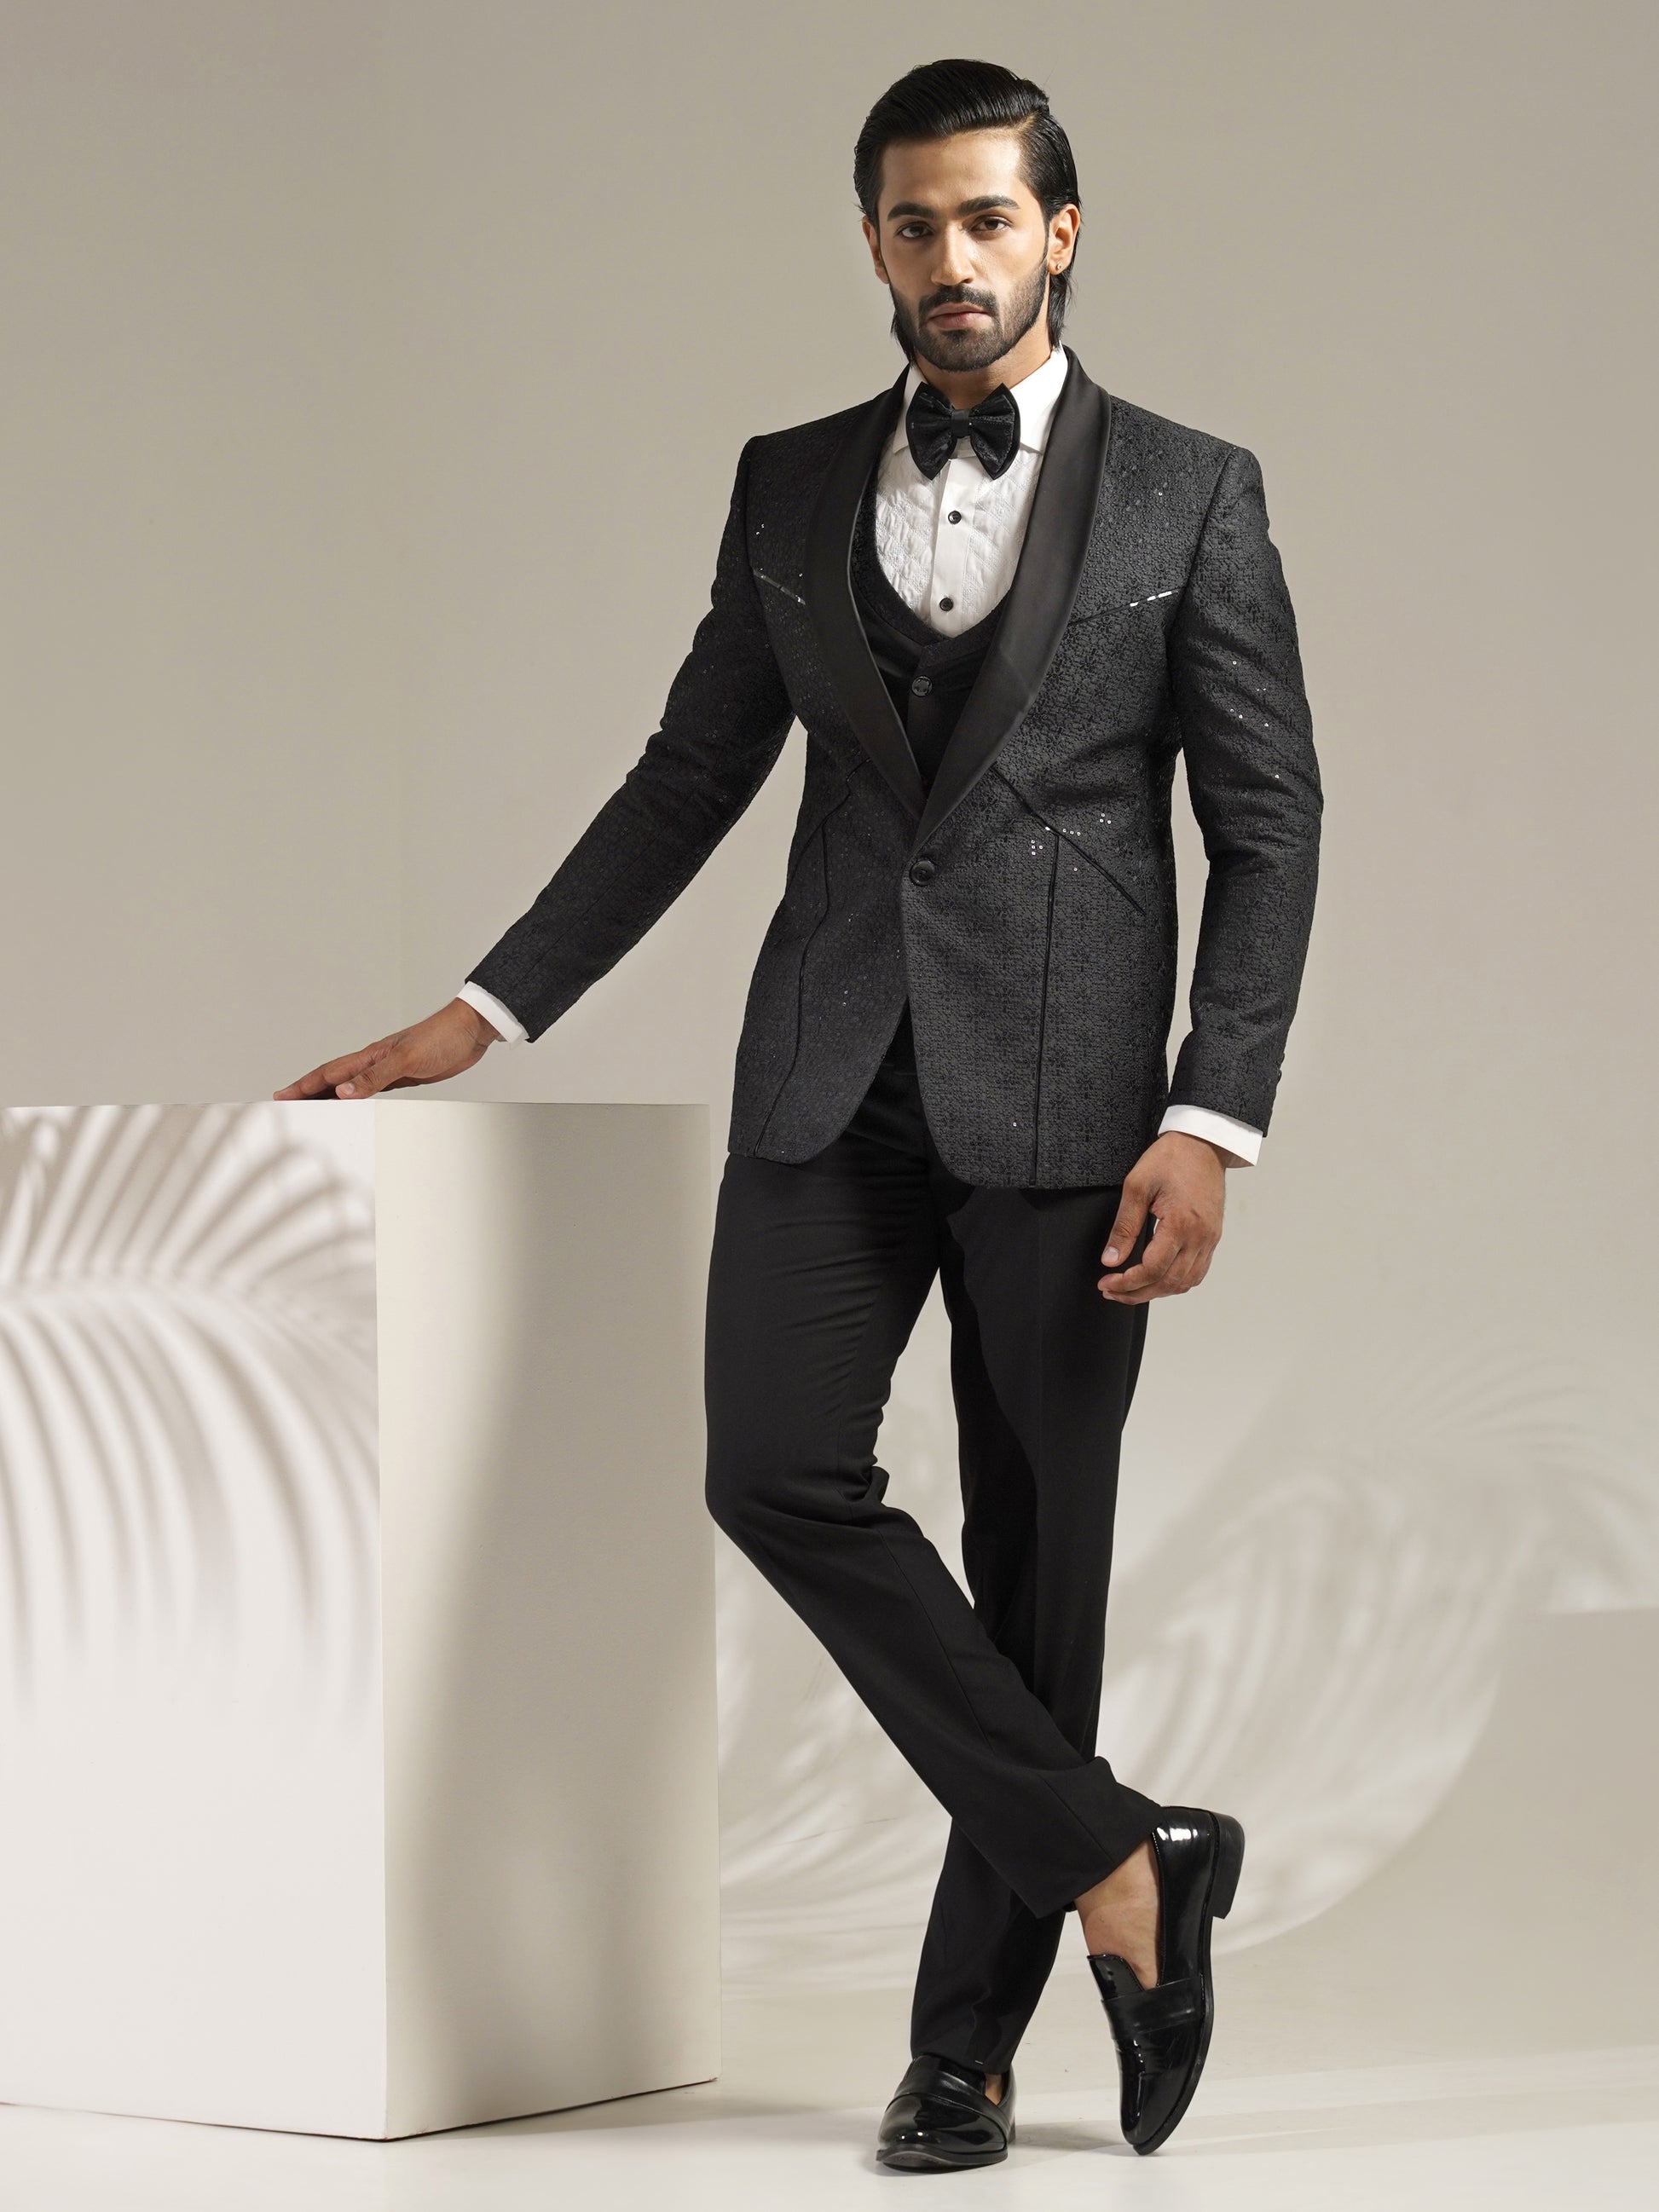 Black Tuxedo for groom by zoop men